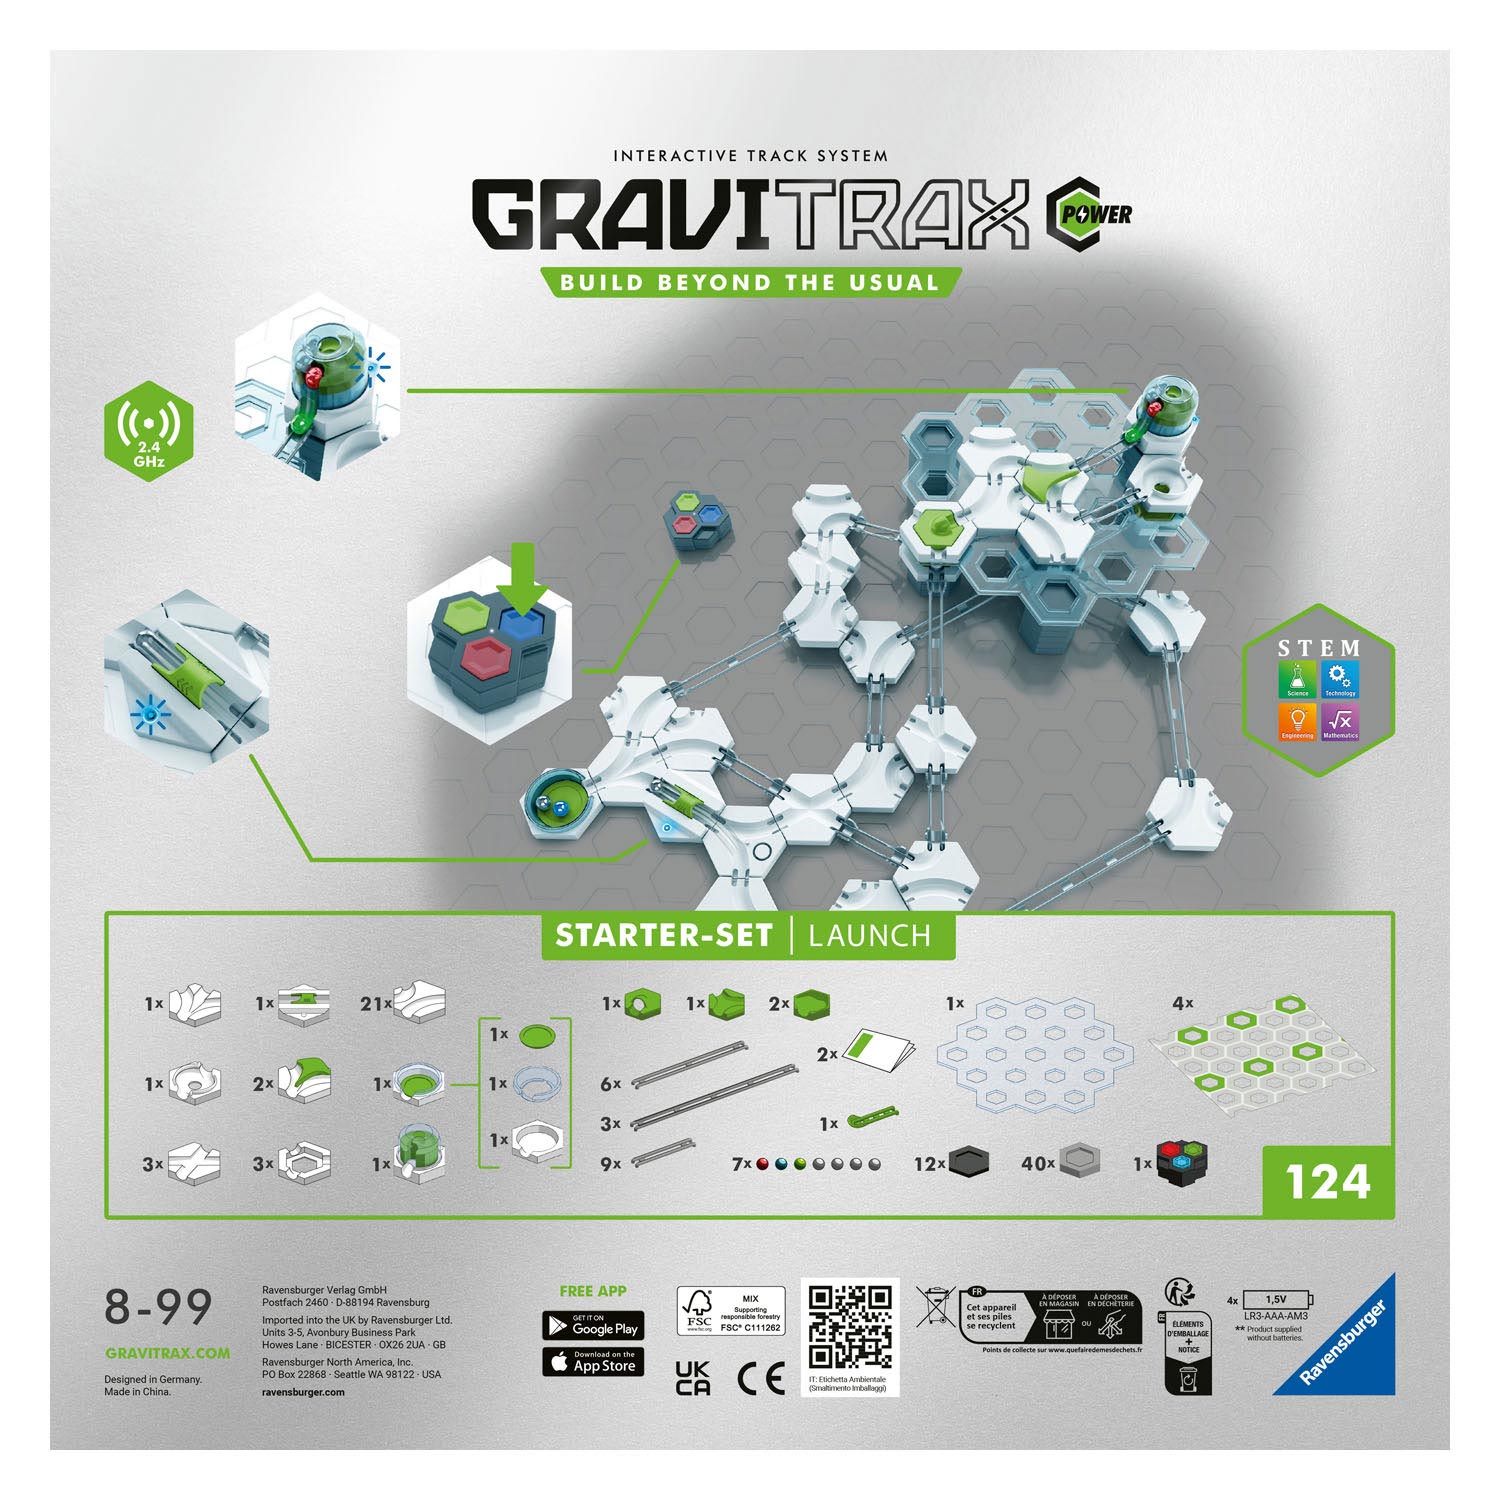 Einführung des GraviTrax Power Starter Sets